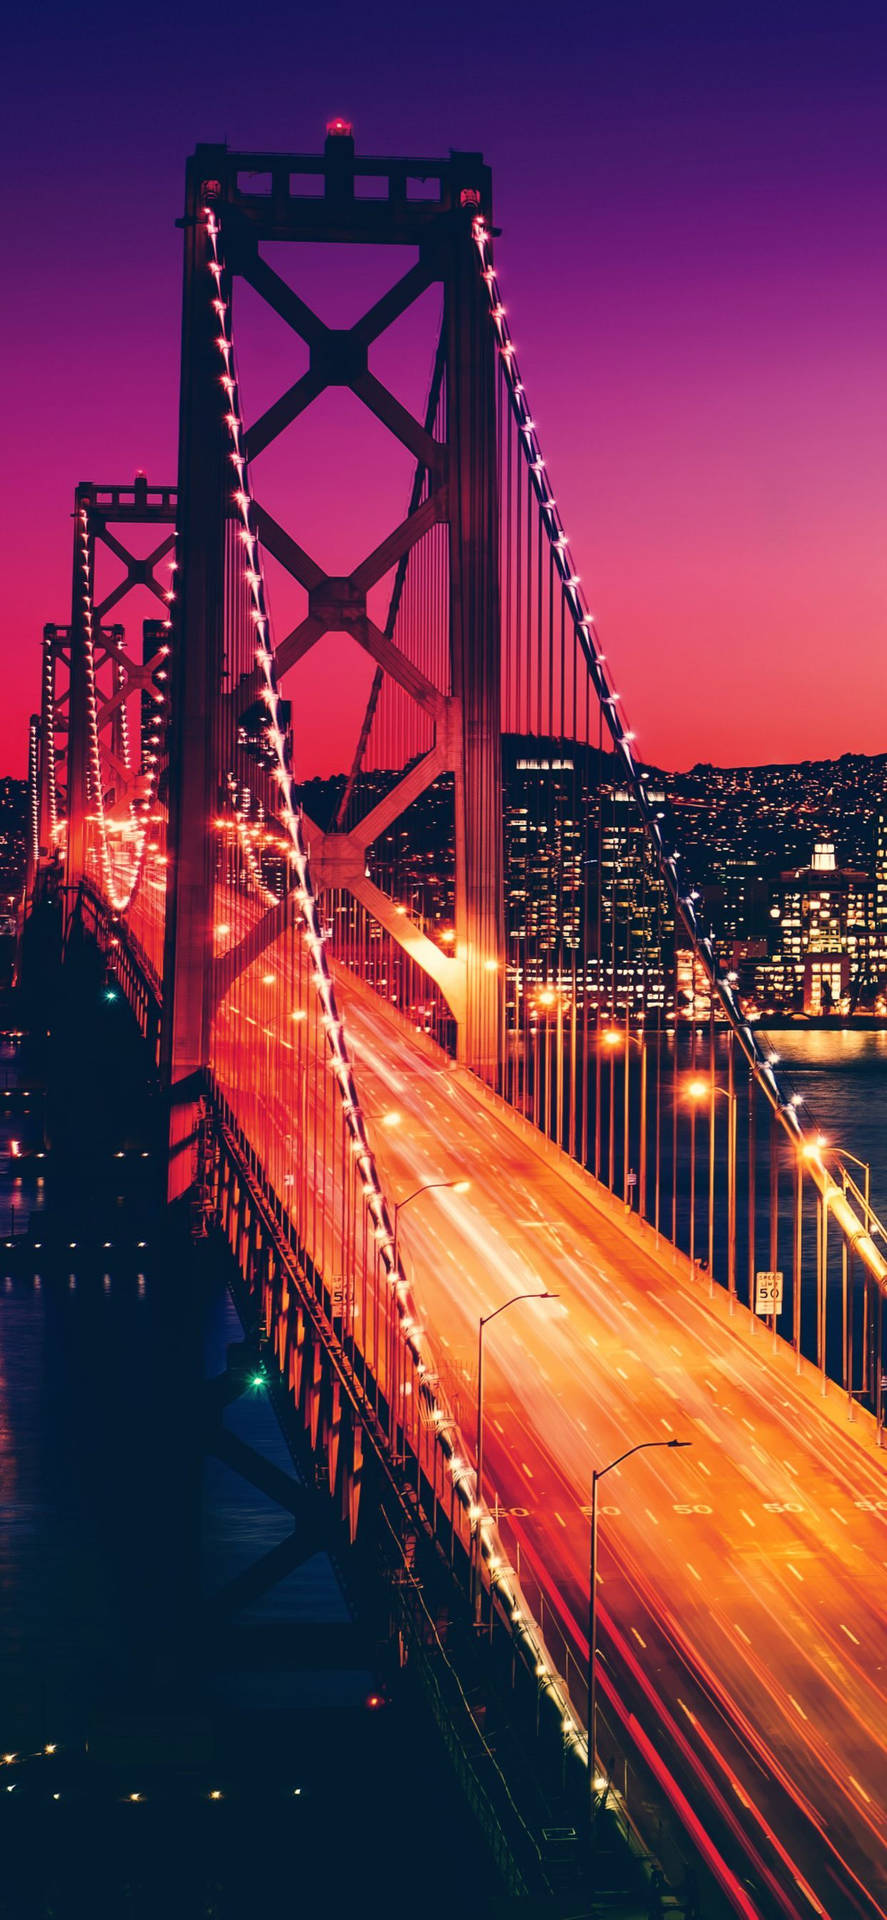 Fundode Tela Para Celular De São Francisco Com A Ponte Golden Gate Fotografada À Noite E Com As Luzes Acesas. Papel de Parede